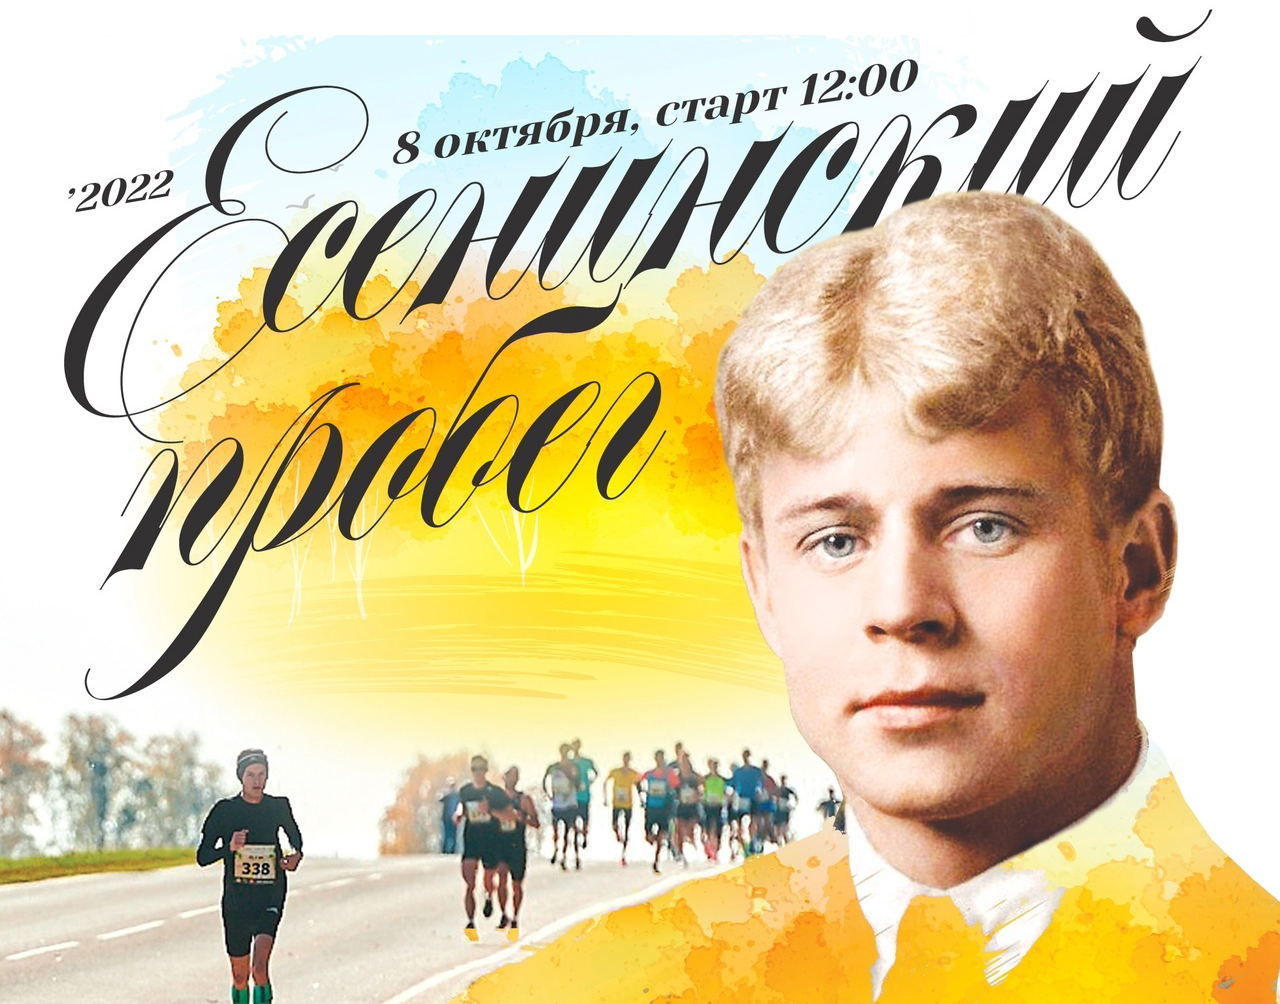 8 октября в Рыбновском районе пройдет легкоатлетический фестиваль «Есенинский пробег»